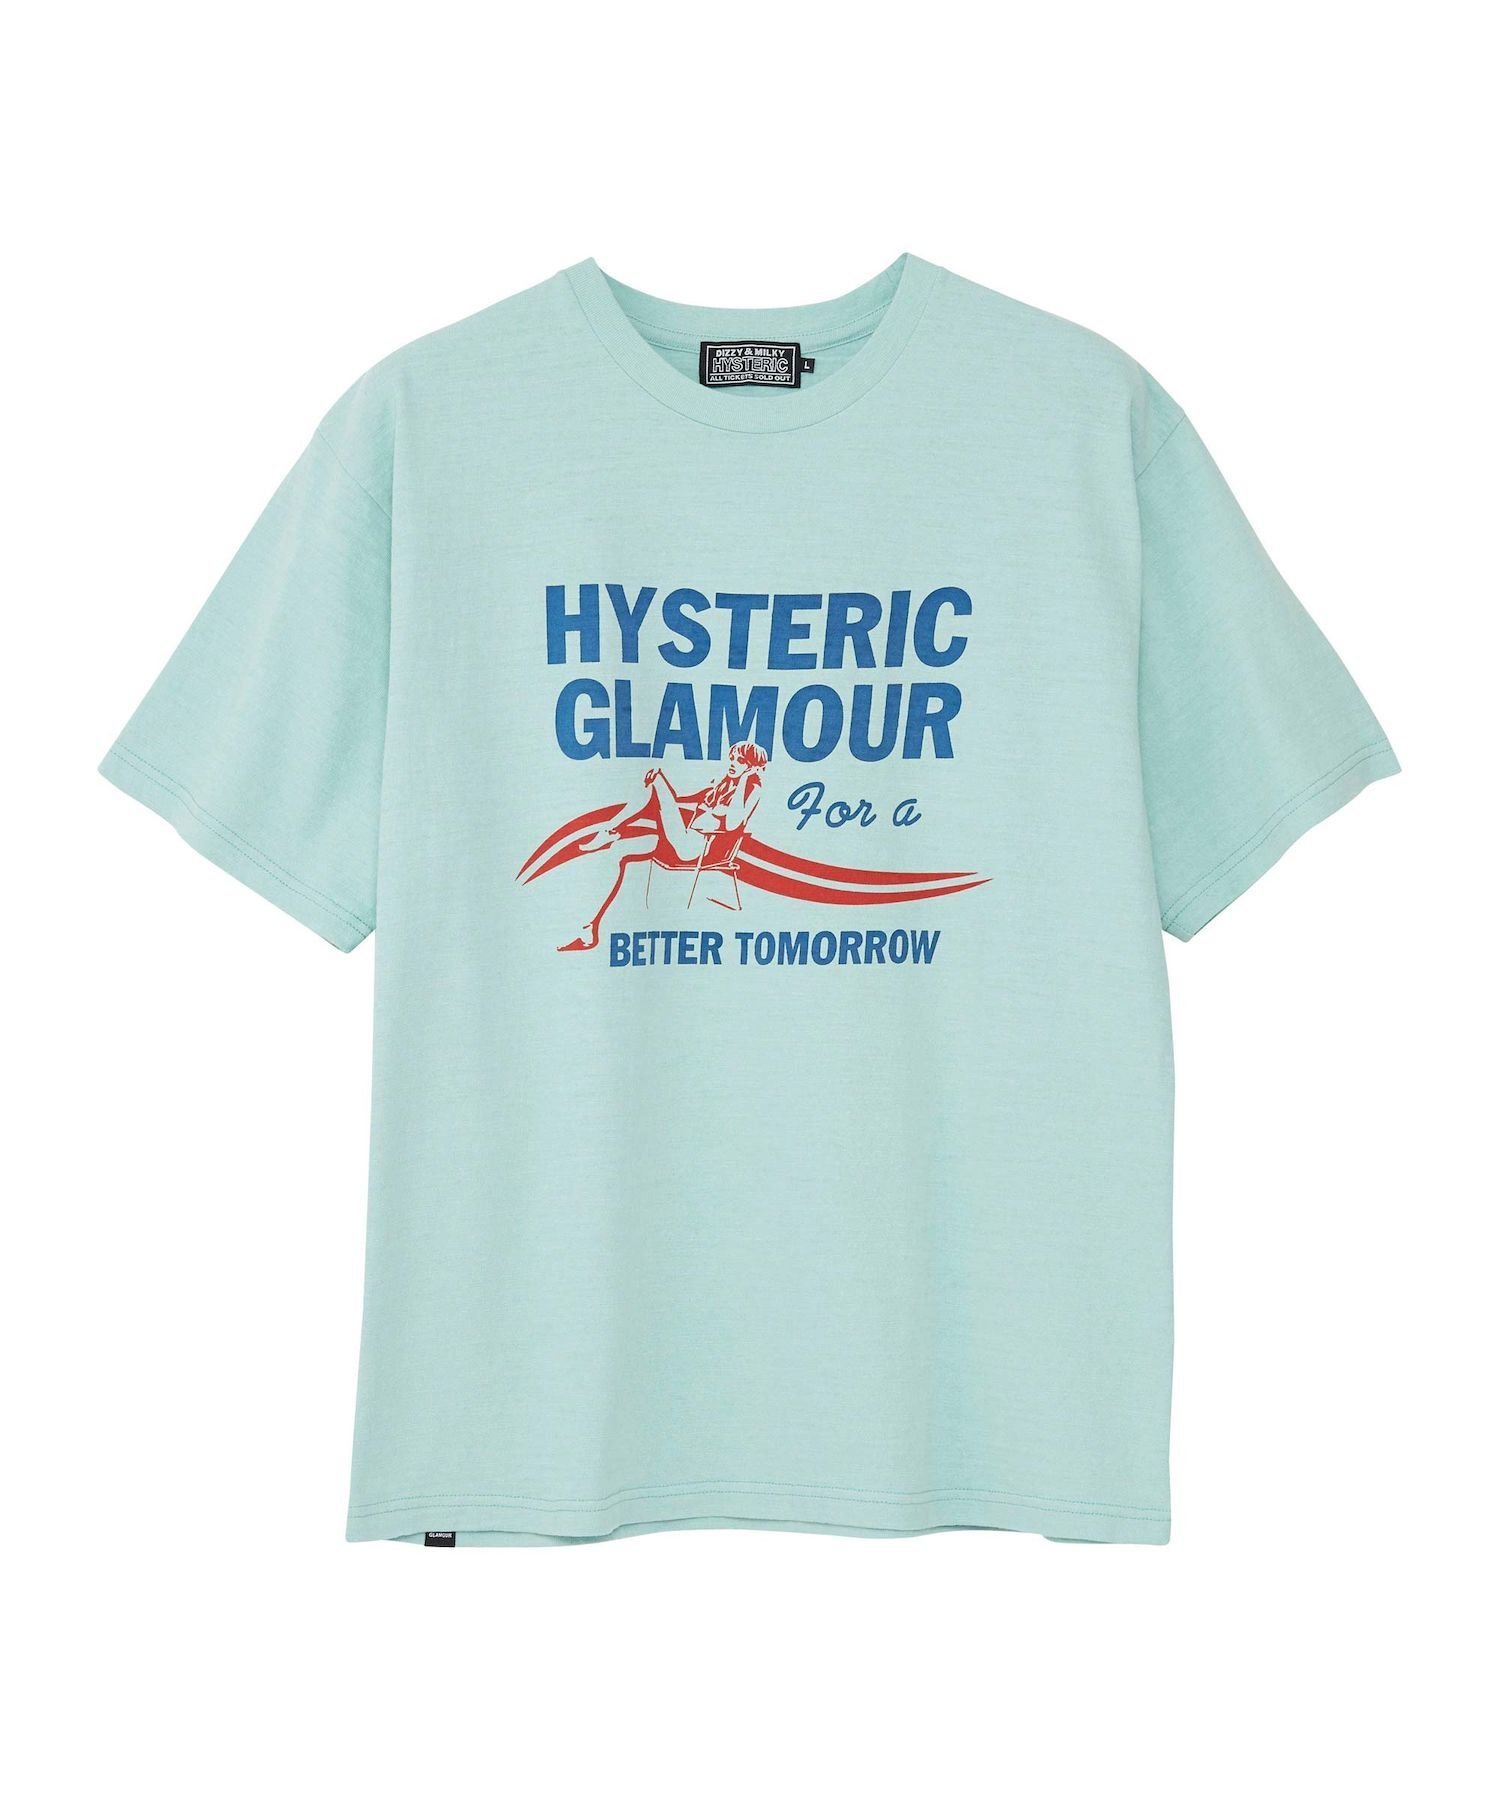 トップス, Tシャツ・カットソー HYSTERIC GLAMOUR HYSTERIC GLAMOUR(M)BETTER TOMORROW T T 